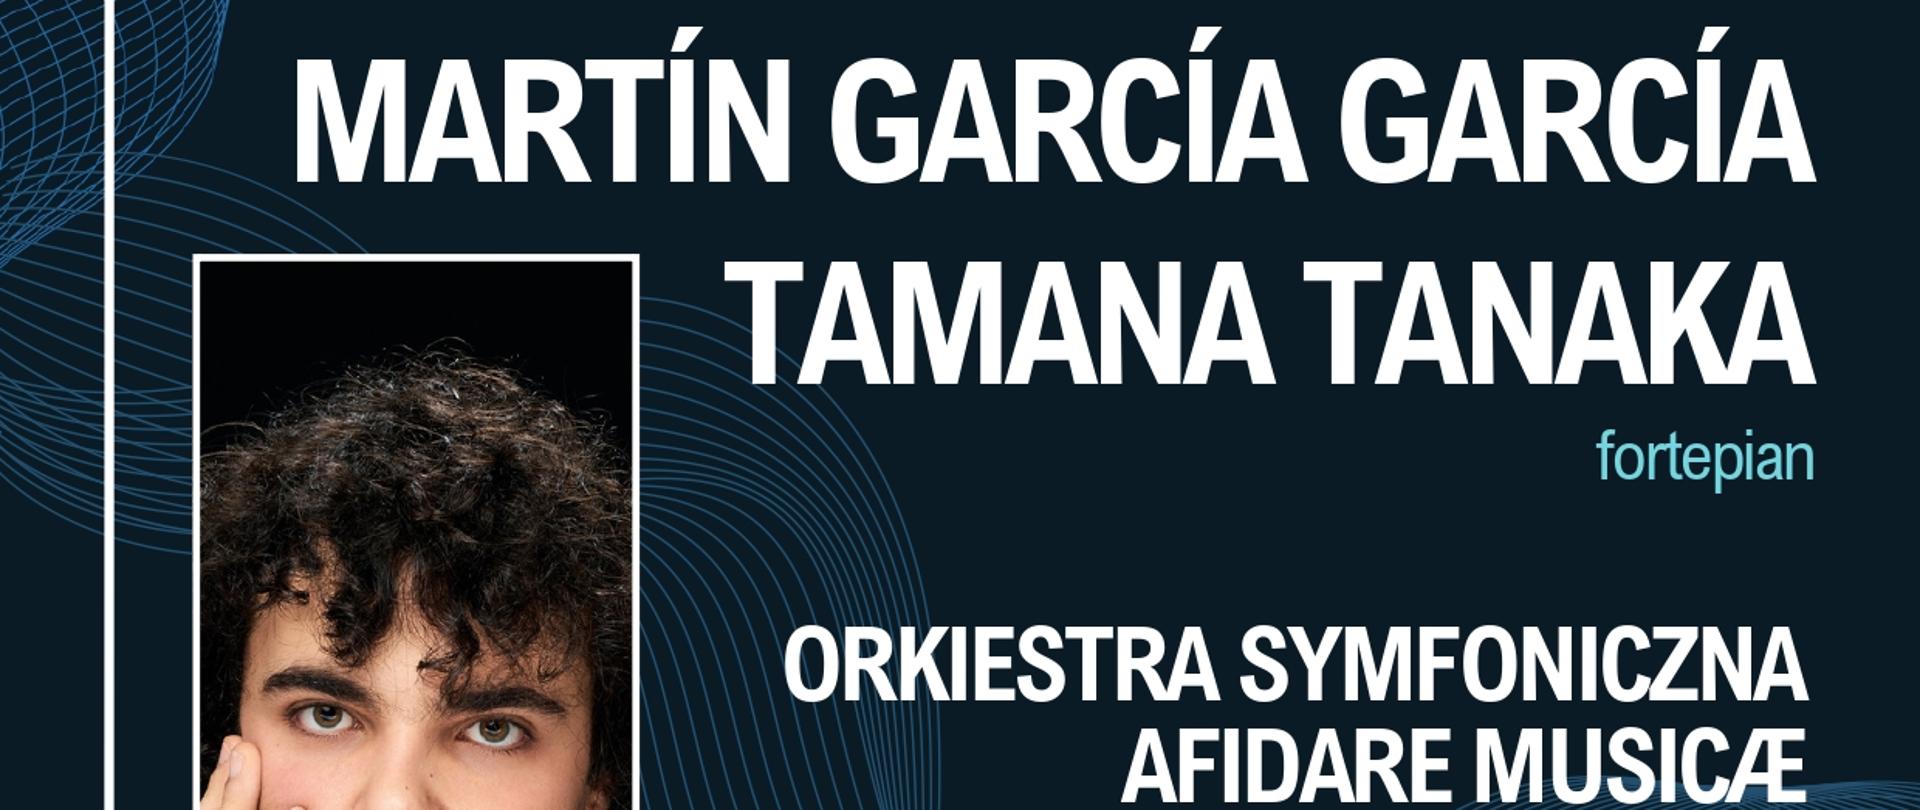 Plakat informacyjny dotyczący Koncertu Martina Garcii,Garcii, odbywającego się w dniu 05.02.2023 r. o godz. 18.00.